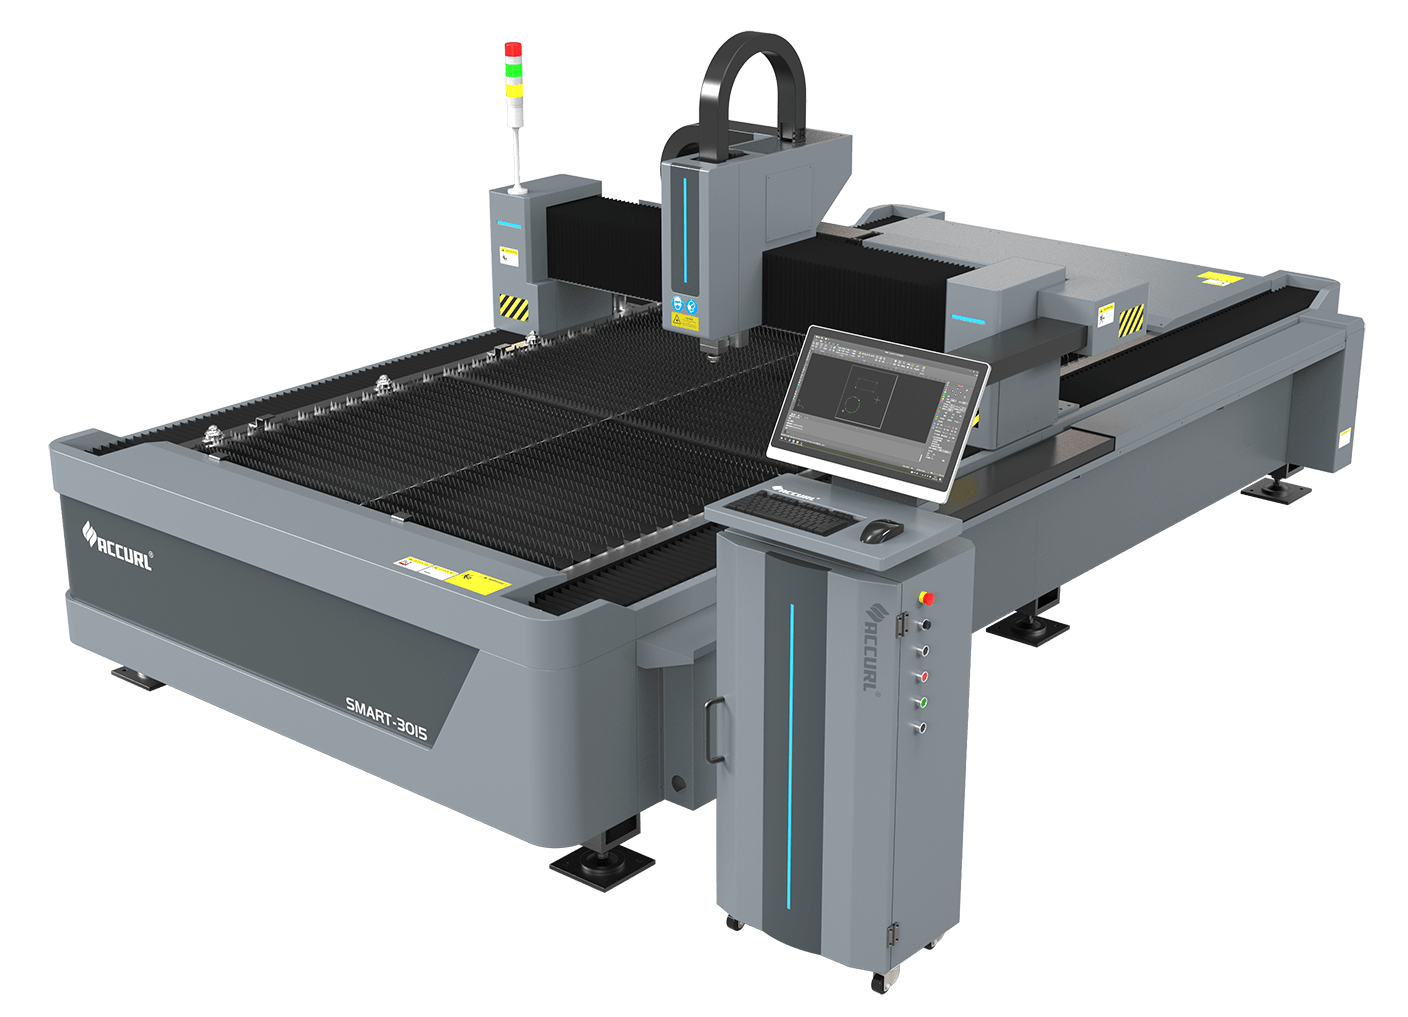 1Kw &#8211; 1.5Kw &#8211; 2Kw &#8211; 3Kw Smart Laser Cutter  | Small Laser Cutting Machine